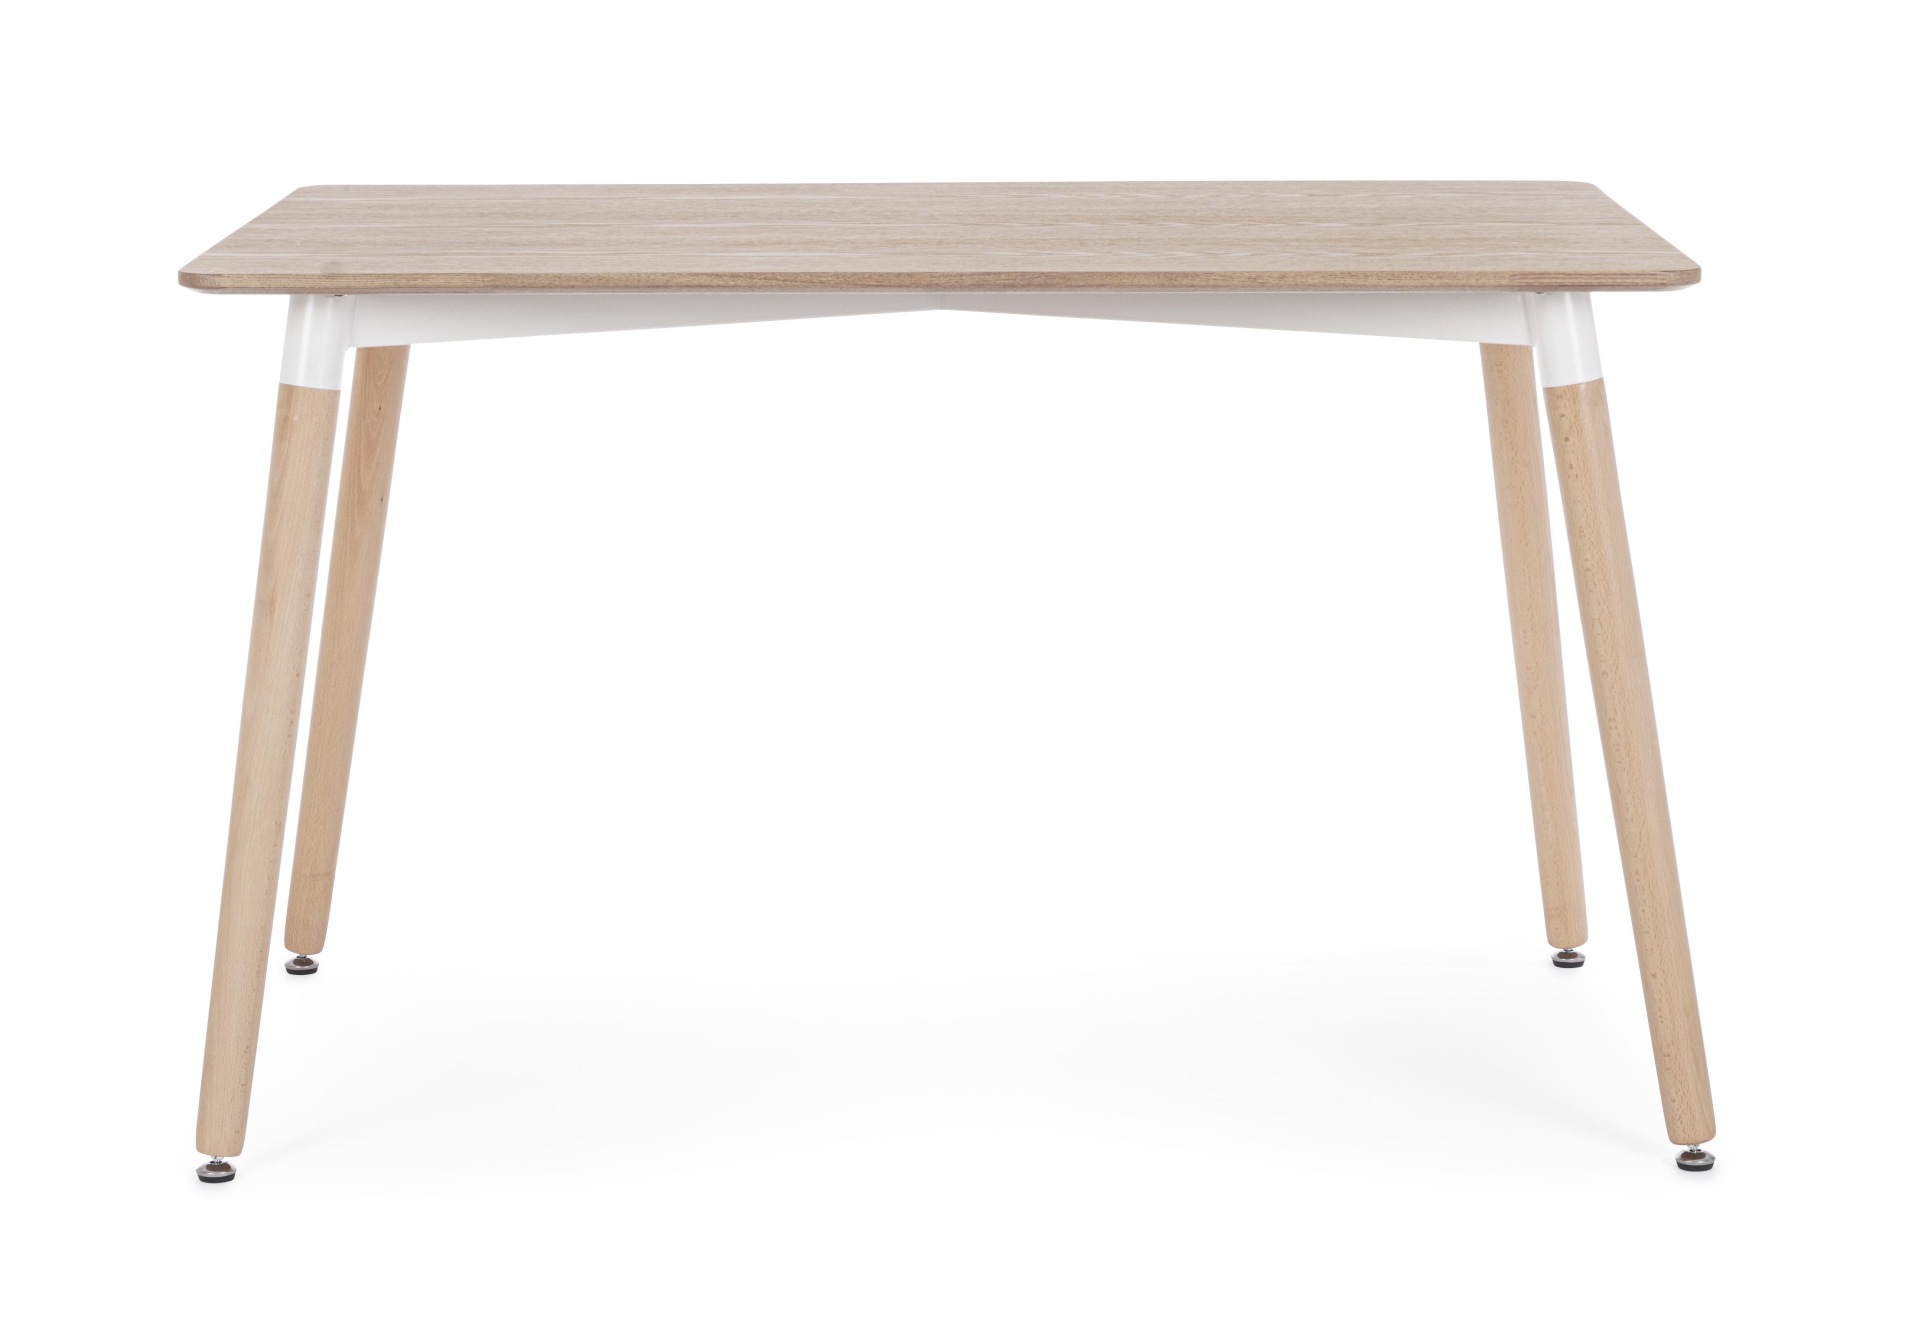 Der Esstisch David überzeugt mit seinem klassischem Design. Gefertigt wurde er aus MDF, welches eine Holz-Optik besitzt. Das Gestell des Tisches ist aus Buchenholz und besitzt eine natürliche Farbe. Der Tisch hat eine Breite von 120 cm.